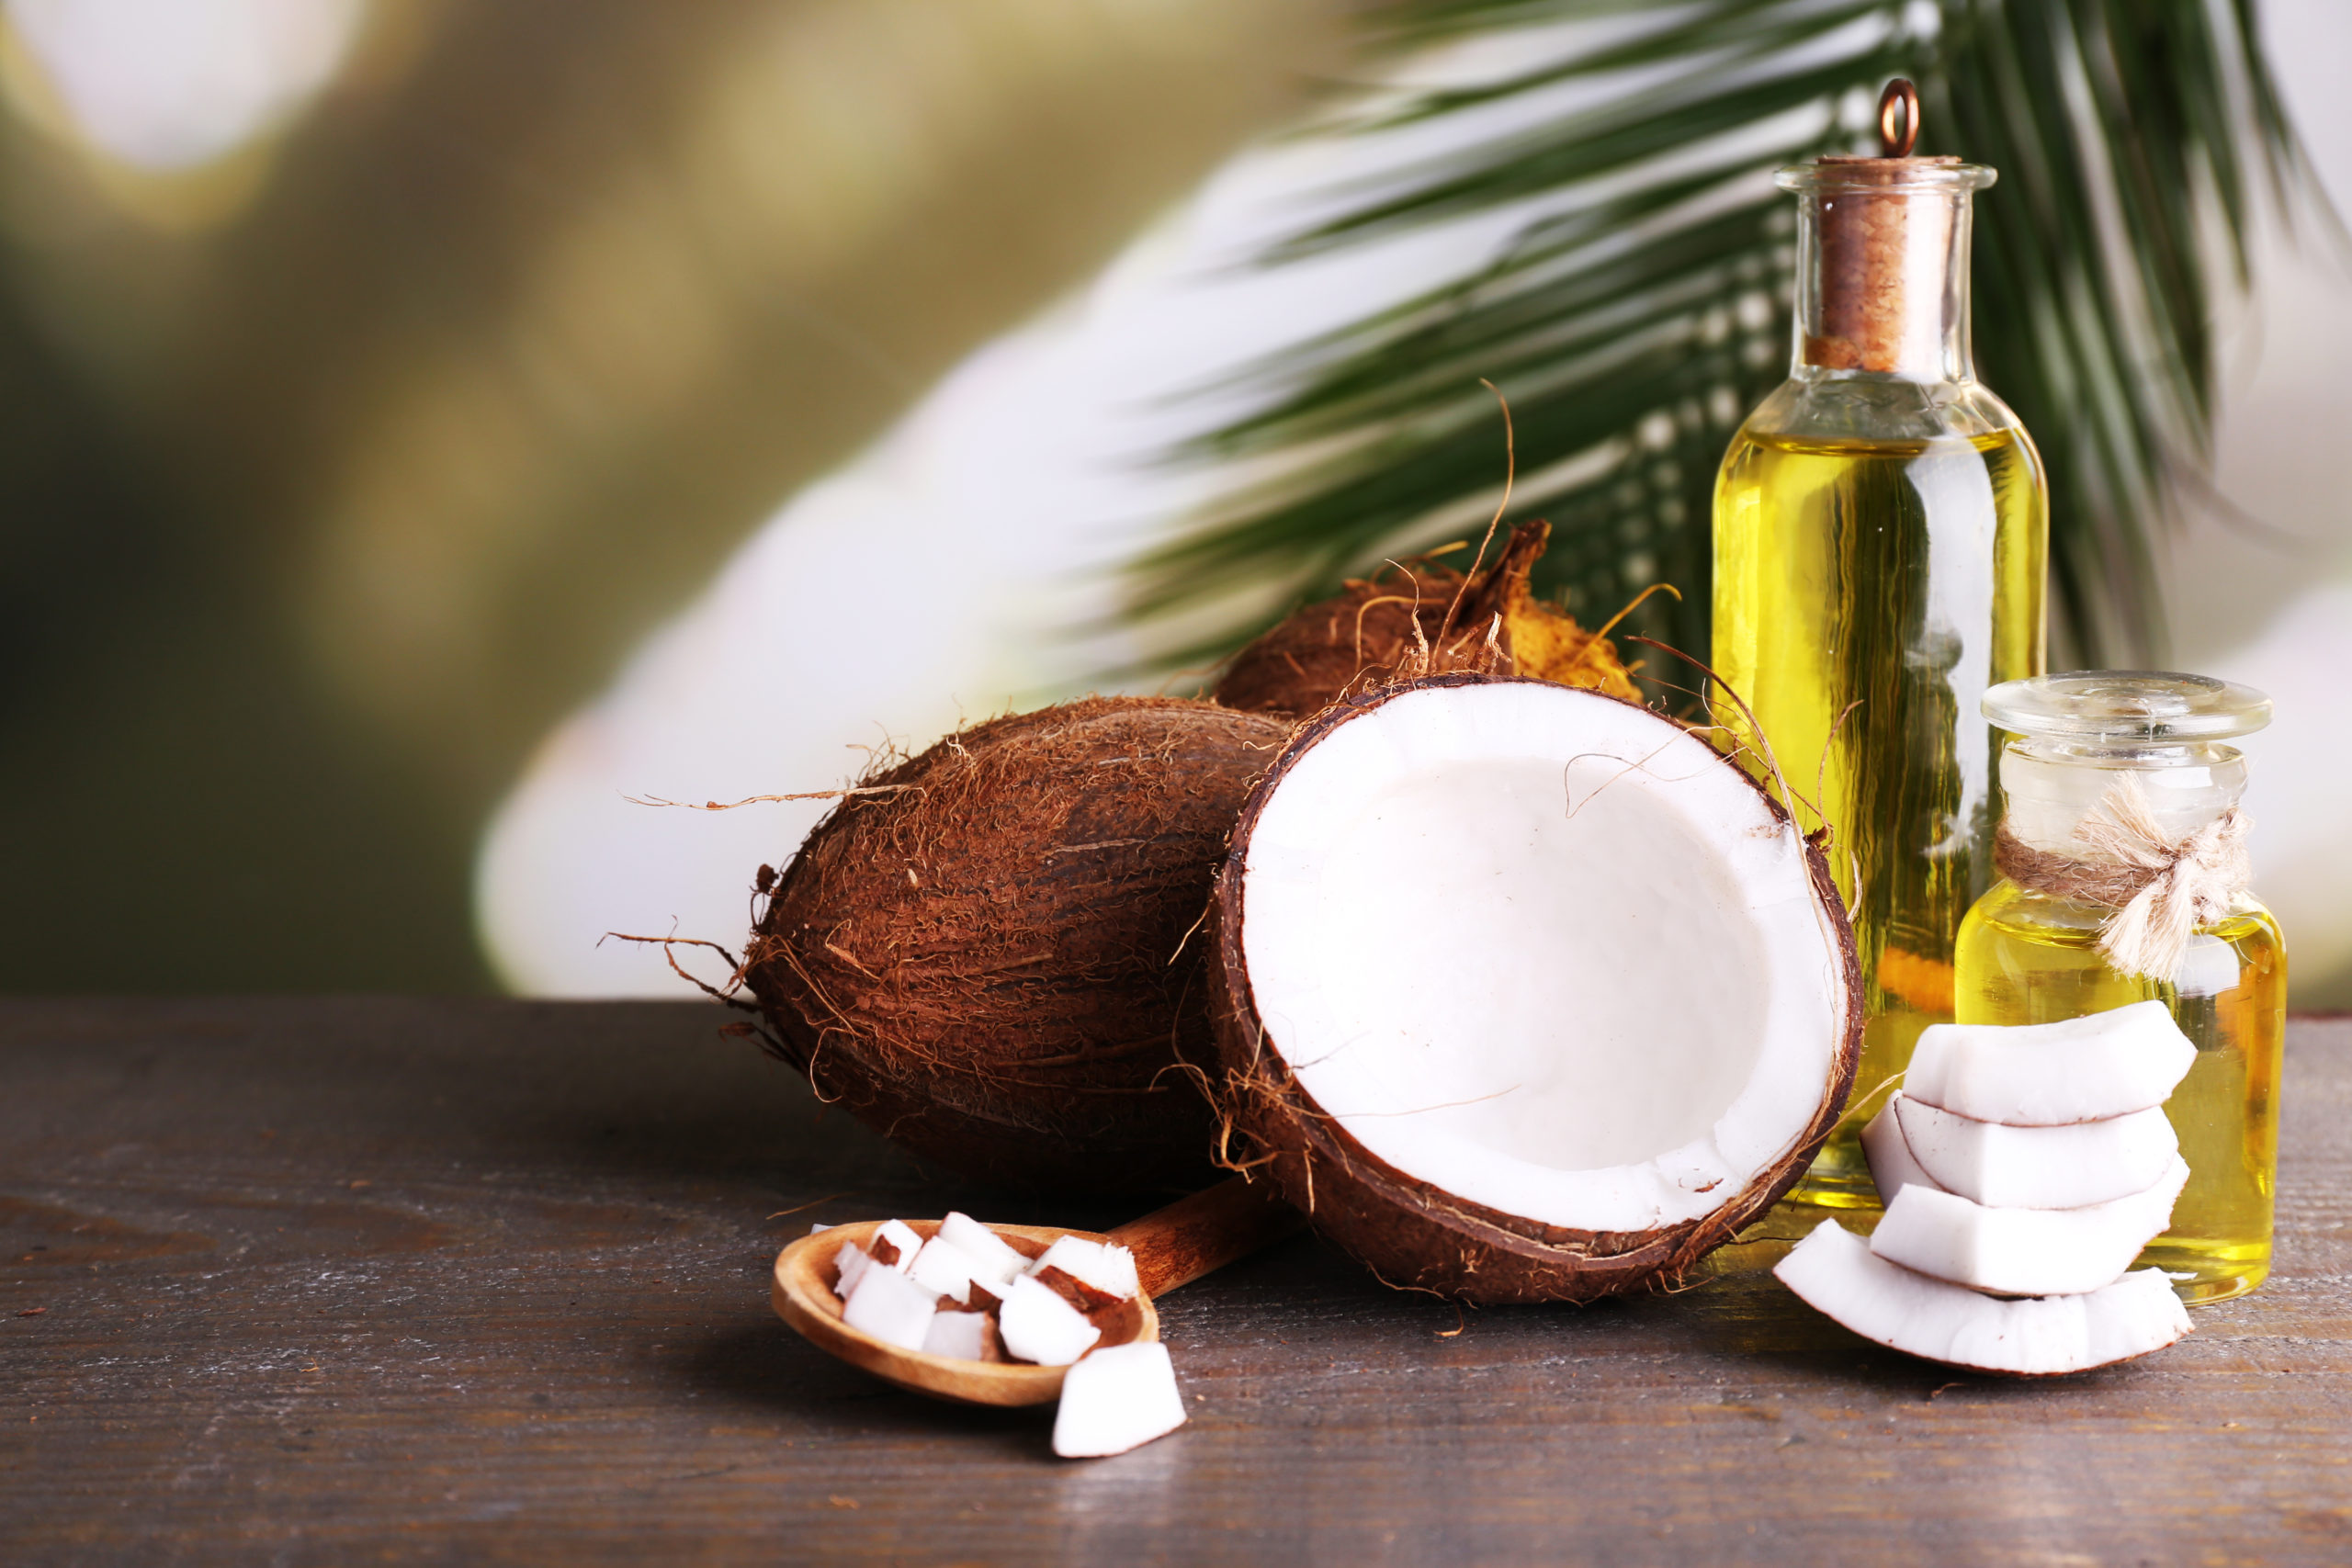 Лучшее кокосовое масло для лица - топ 10 масел, обзор и рейтинг